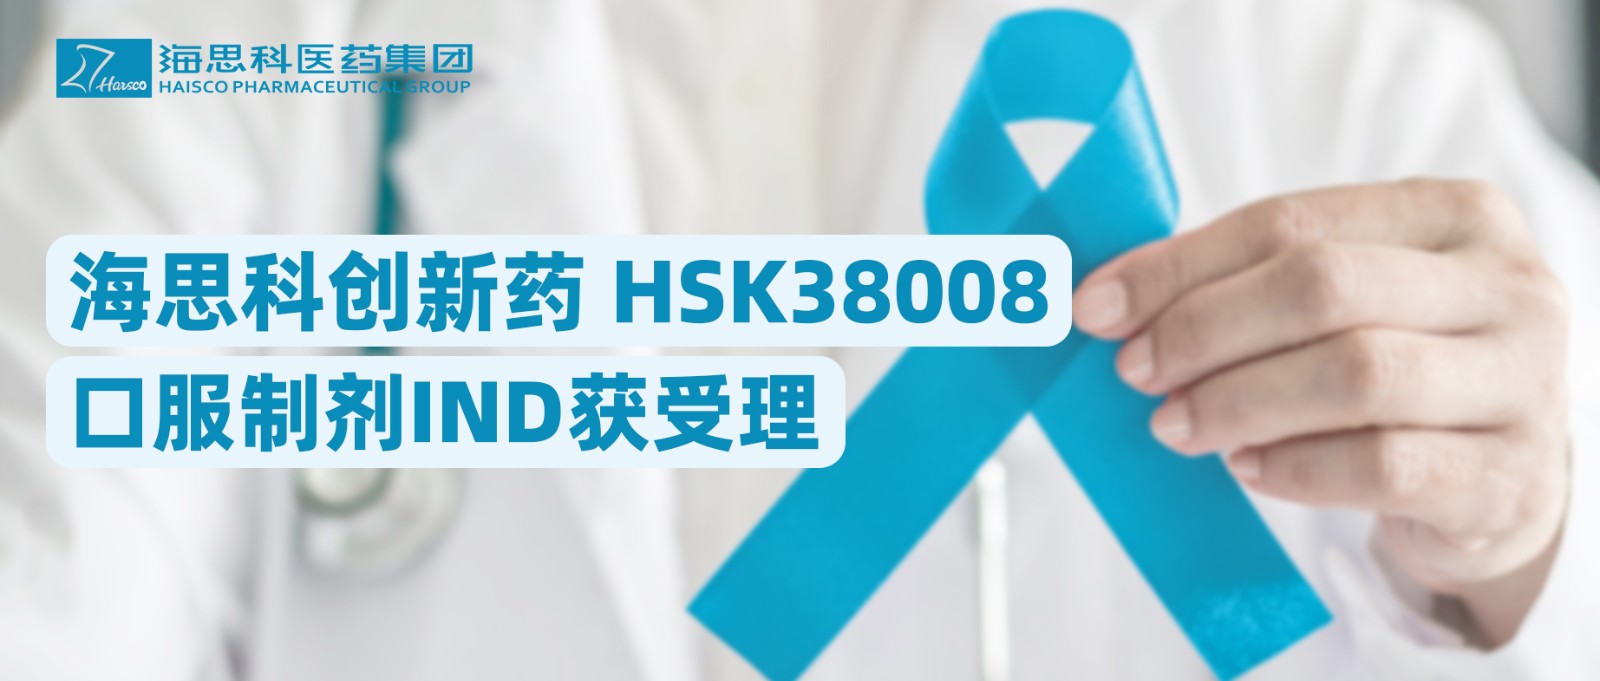 海思科創新藥HSK38008口服制劑IND獲受理